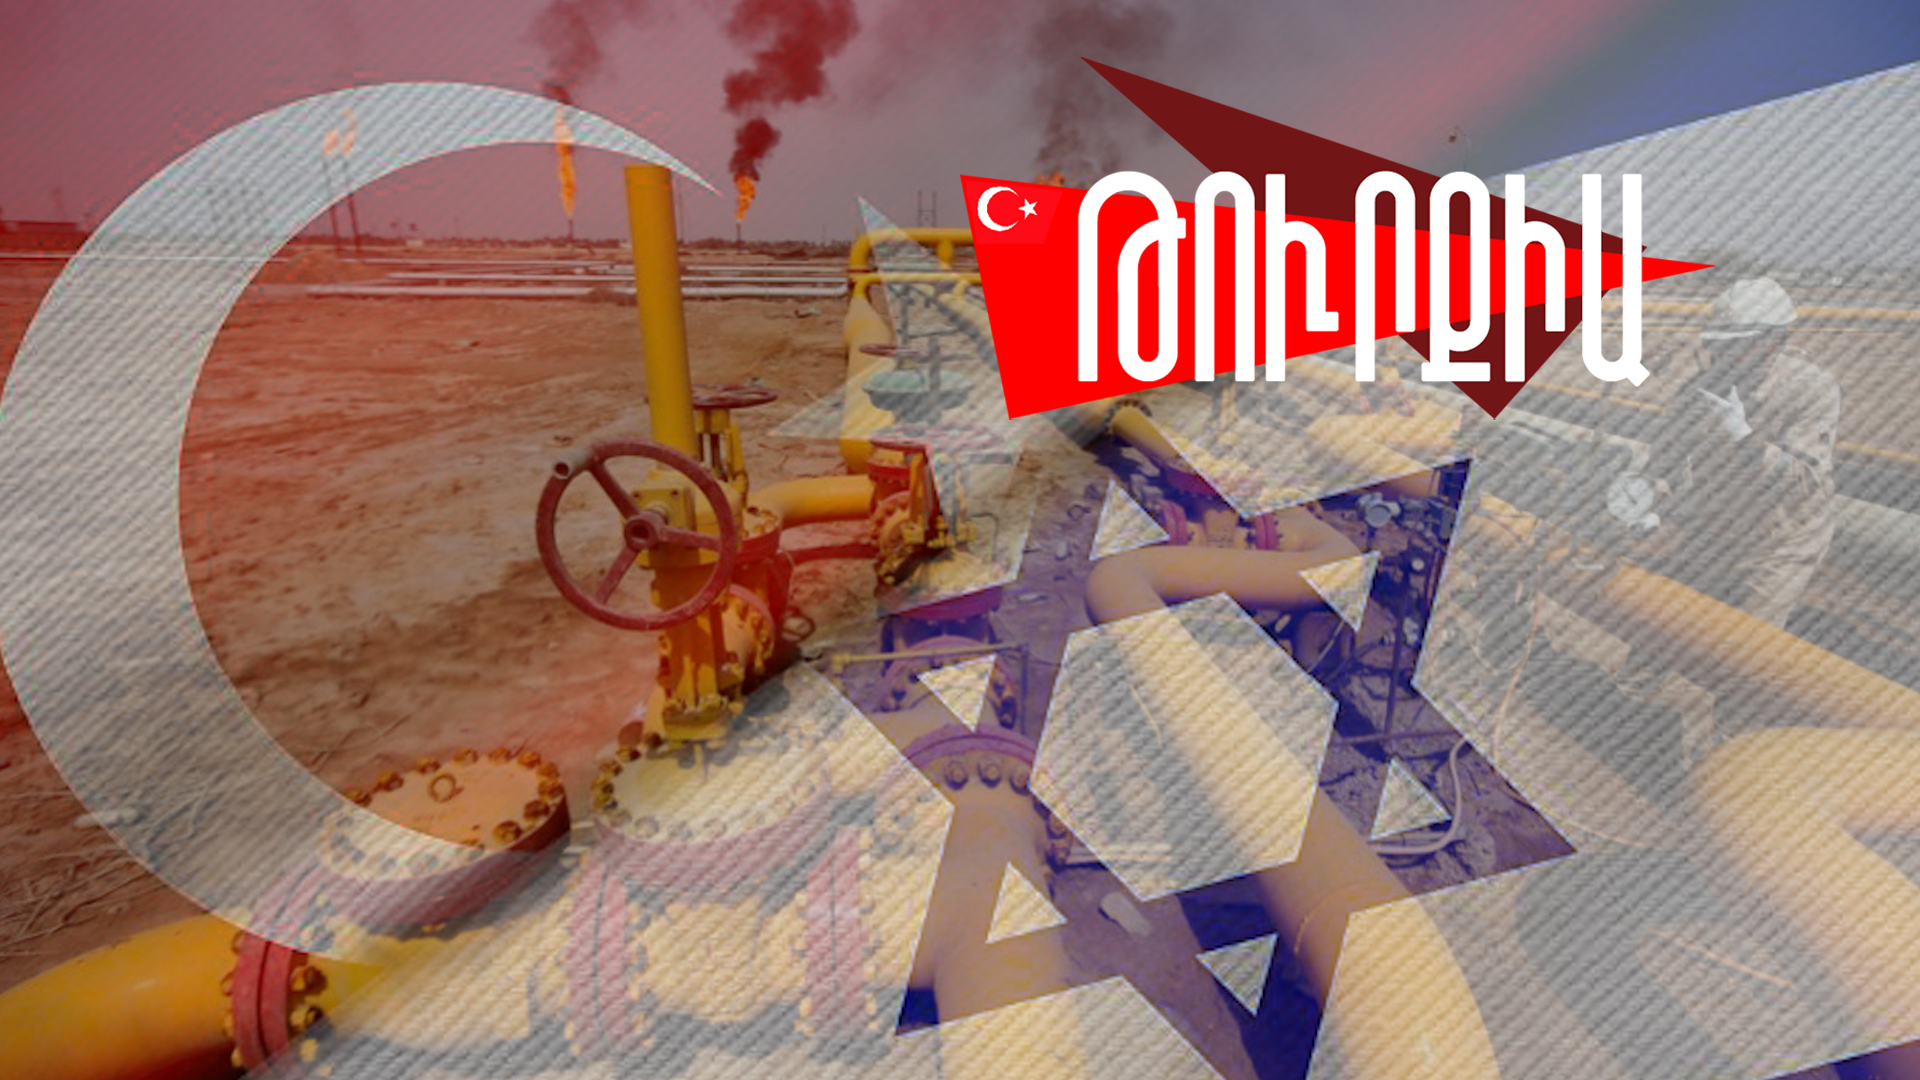 Թուրքիայի ու Իսրայելի հարաբերությունները «տաքանում են» իսրայելական գազով